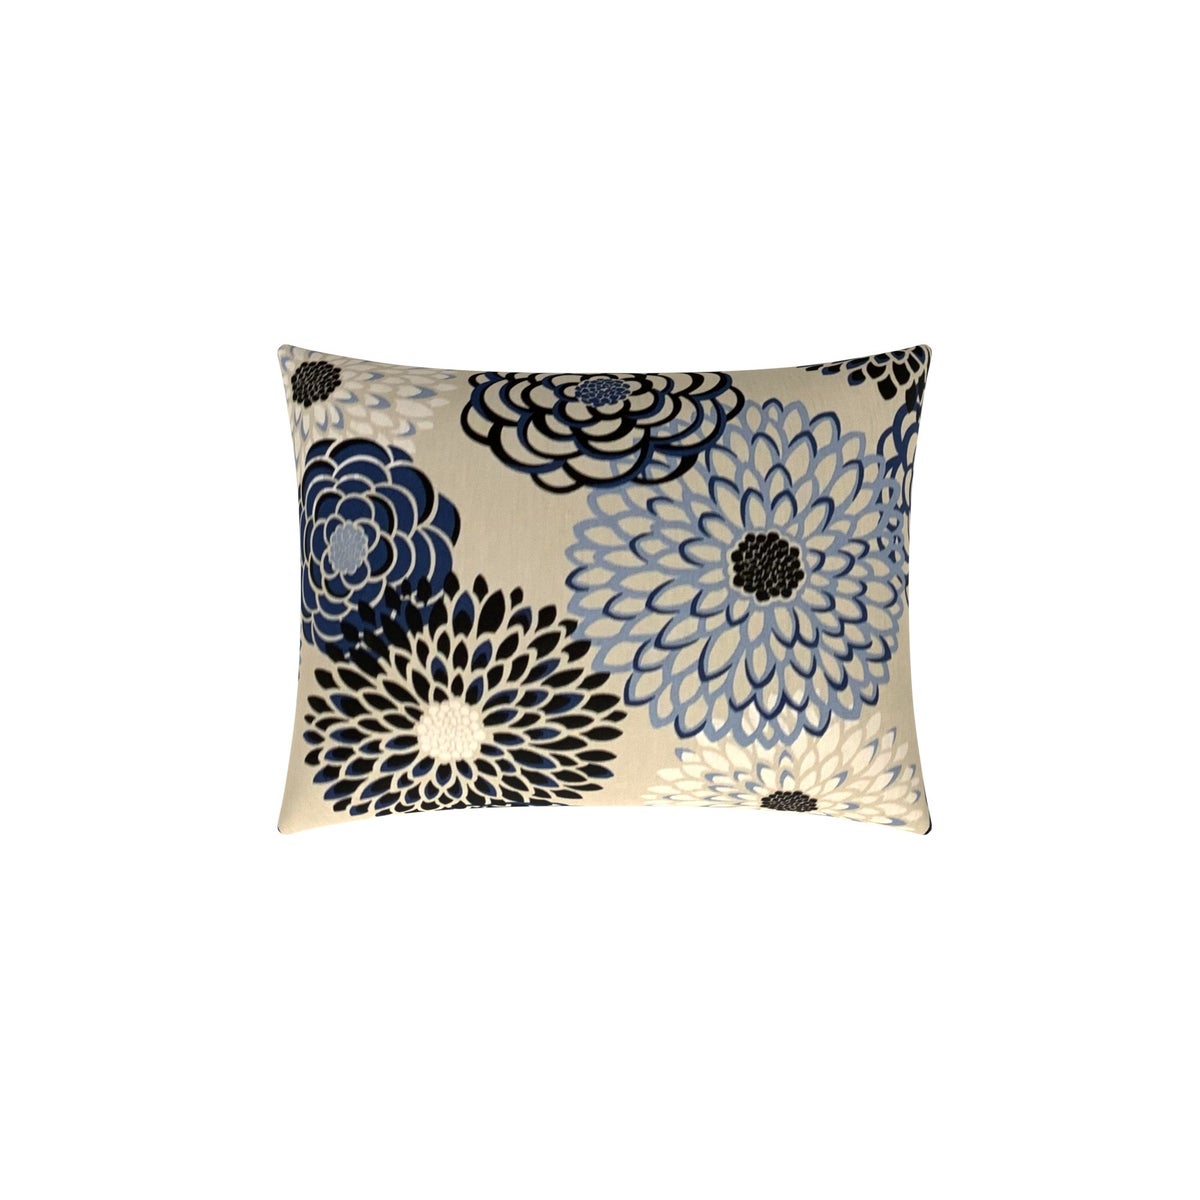 Marietta - Ocean -  Pillow - 15" x 20"